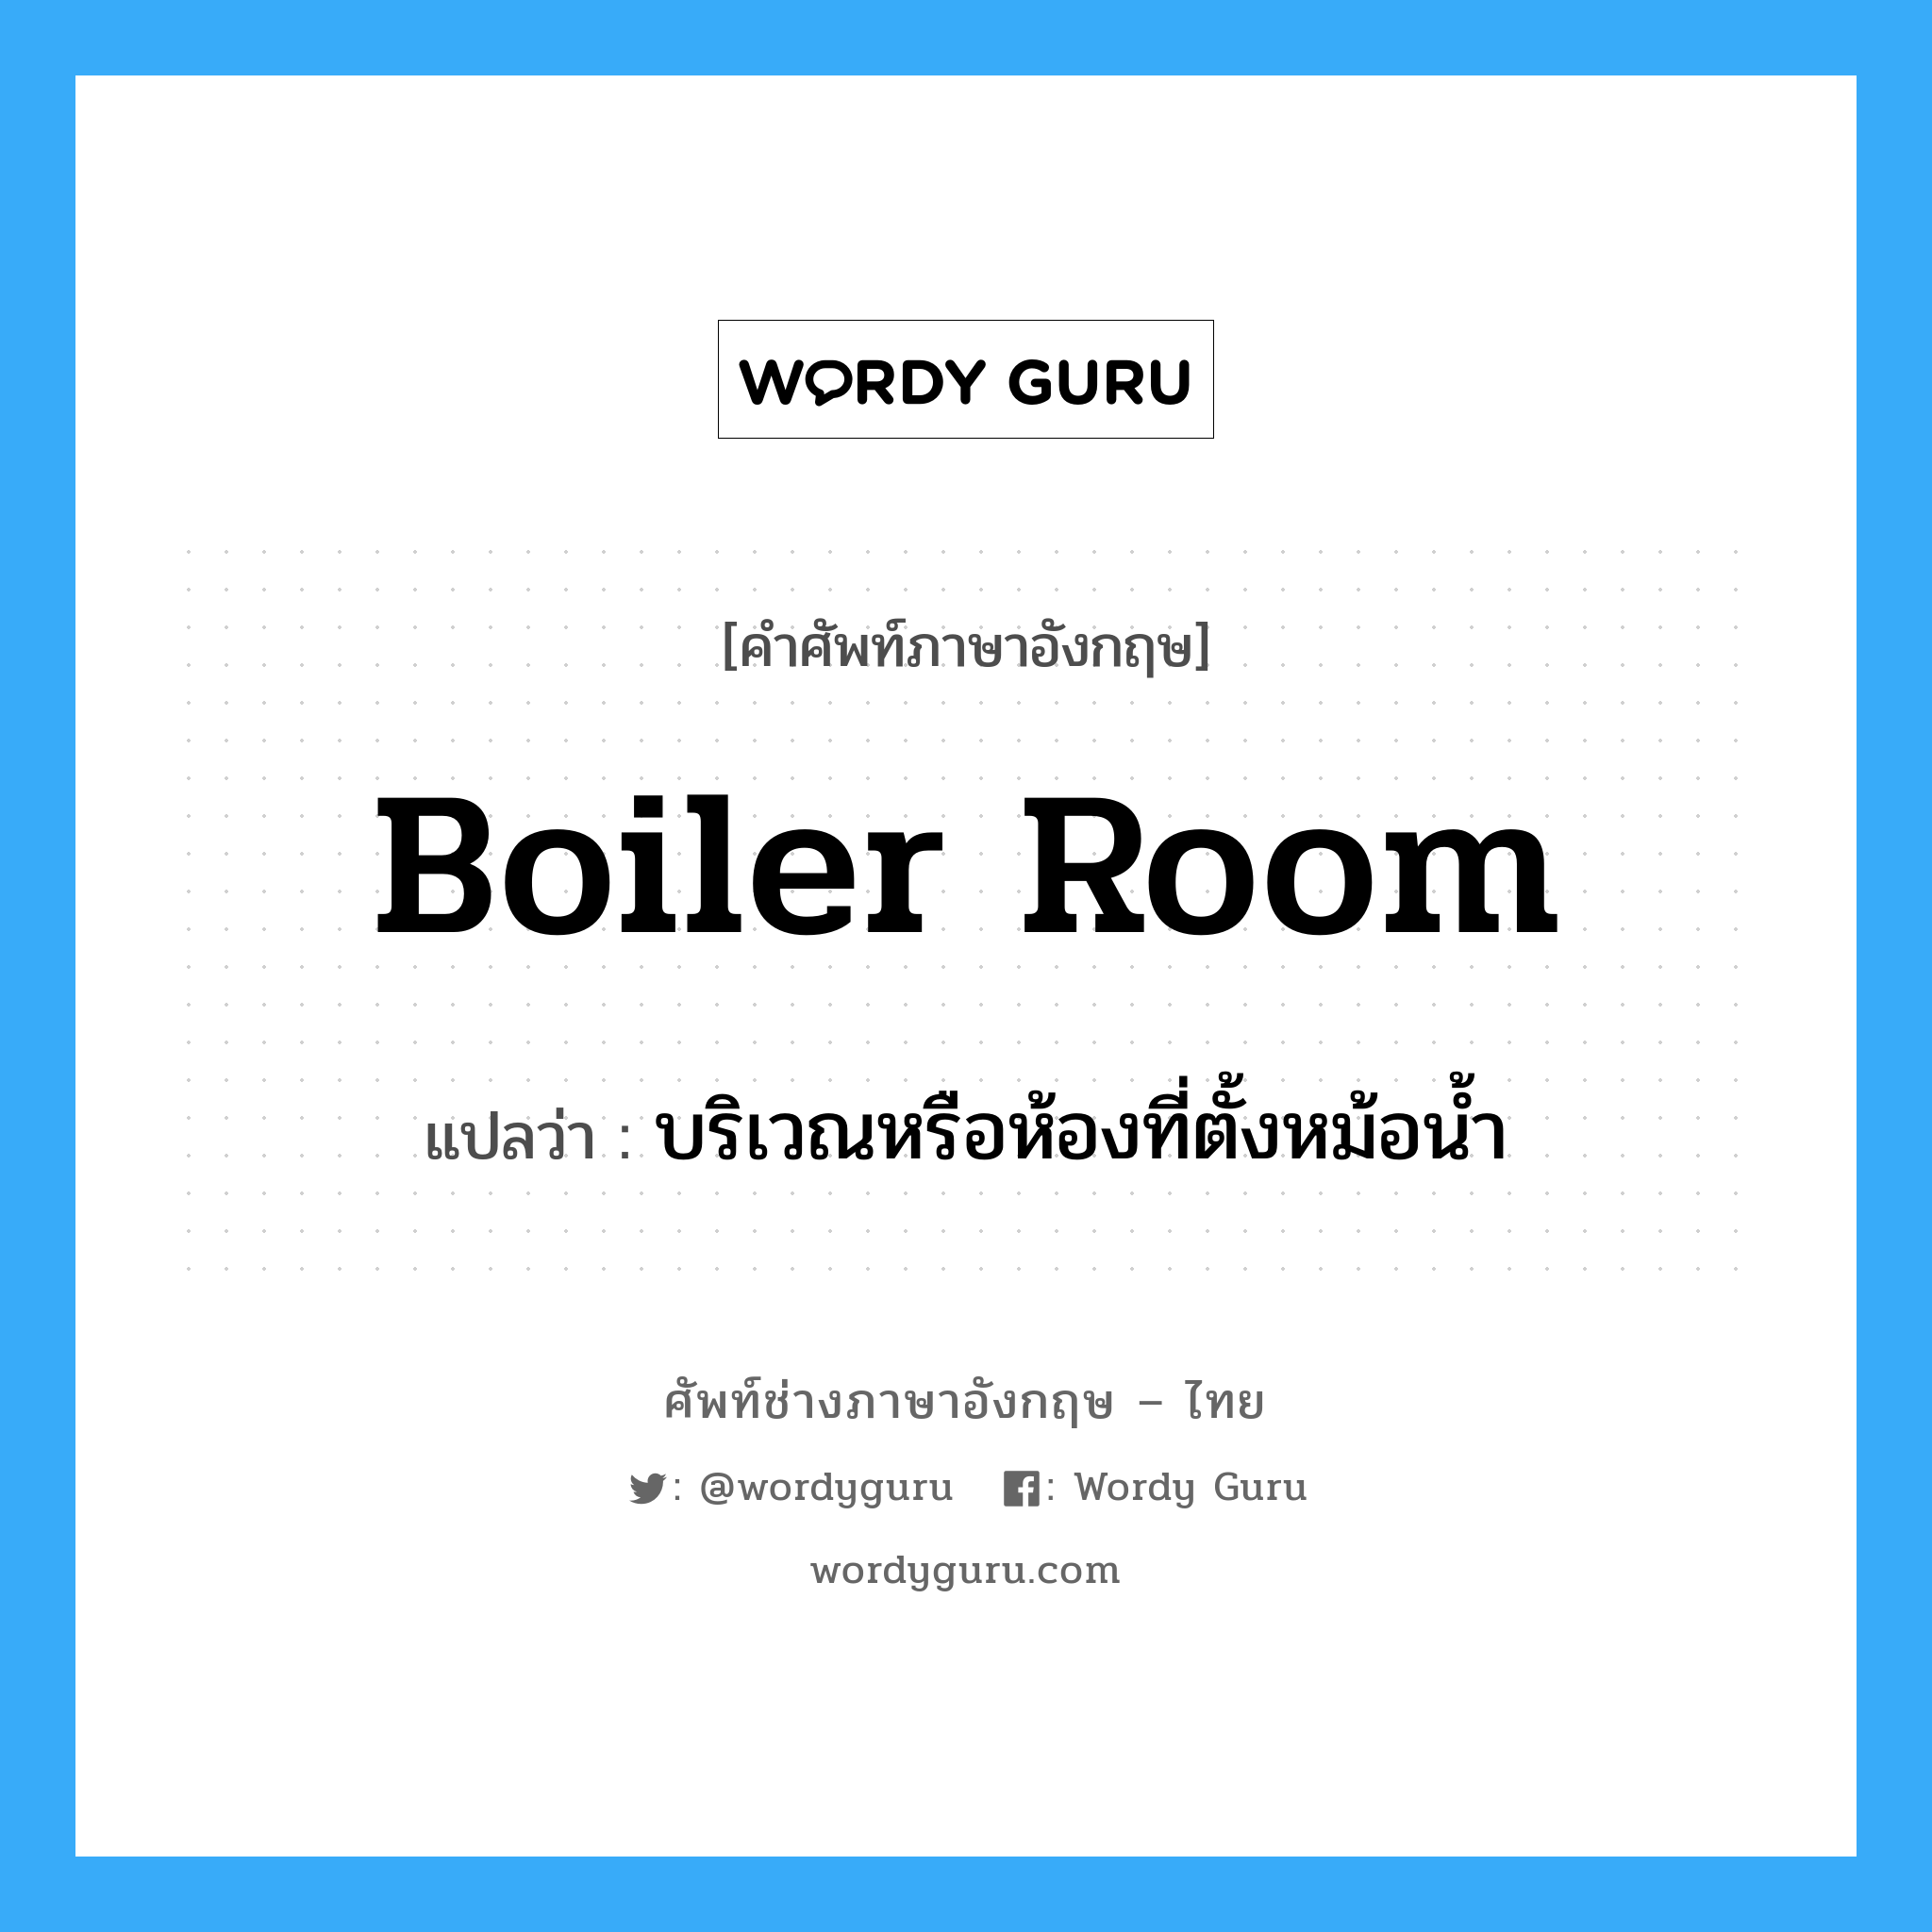 boiler room แปลว่า?, คำศัพท์ช่างภาษาอังกฤษ - ไทย boiler room คำศัพท์ภาษาอังกฤษ boiler room แปลว่า บริเวณหรือห้องที่ตั้งหม้อน้ำ